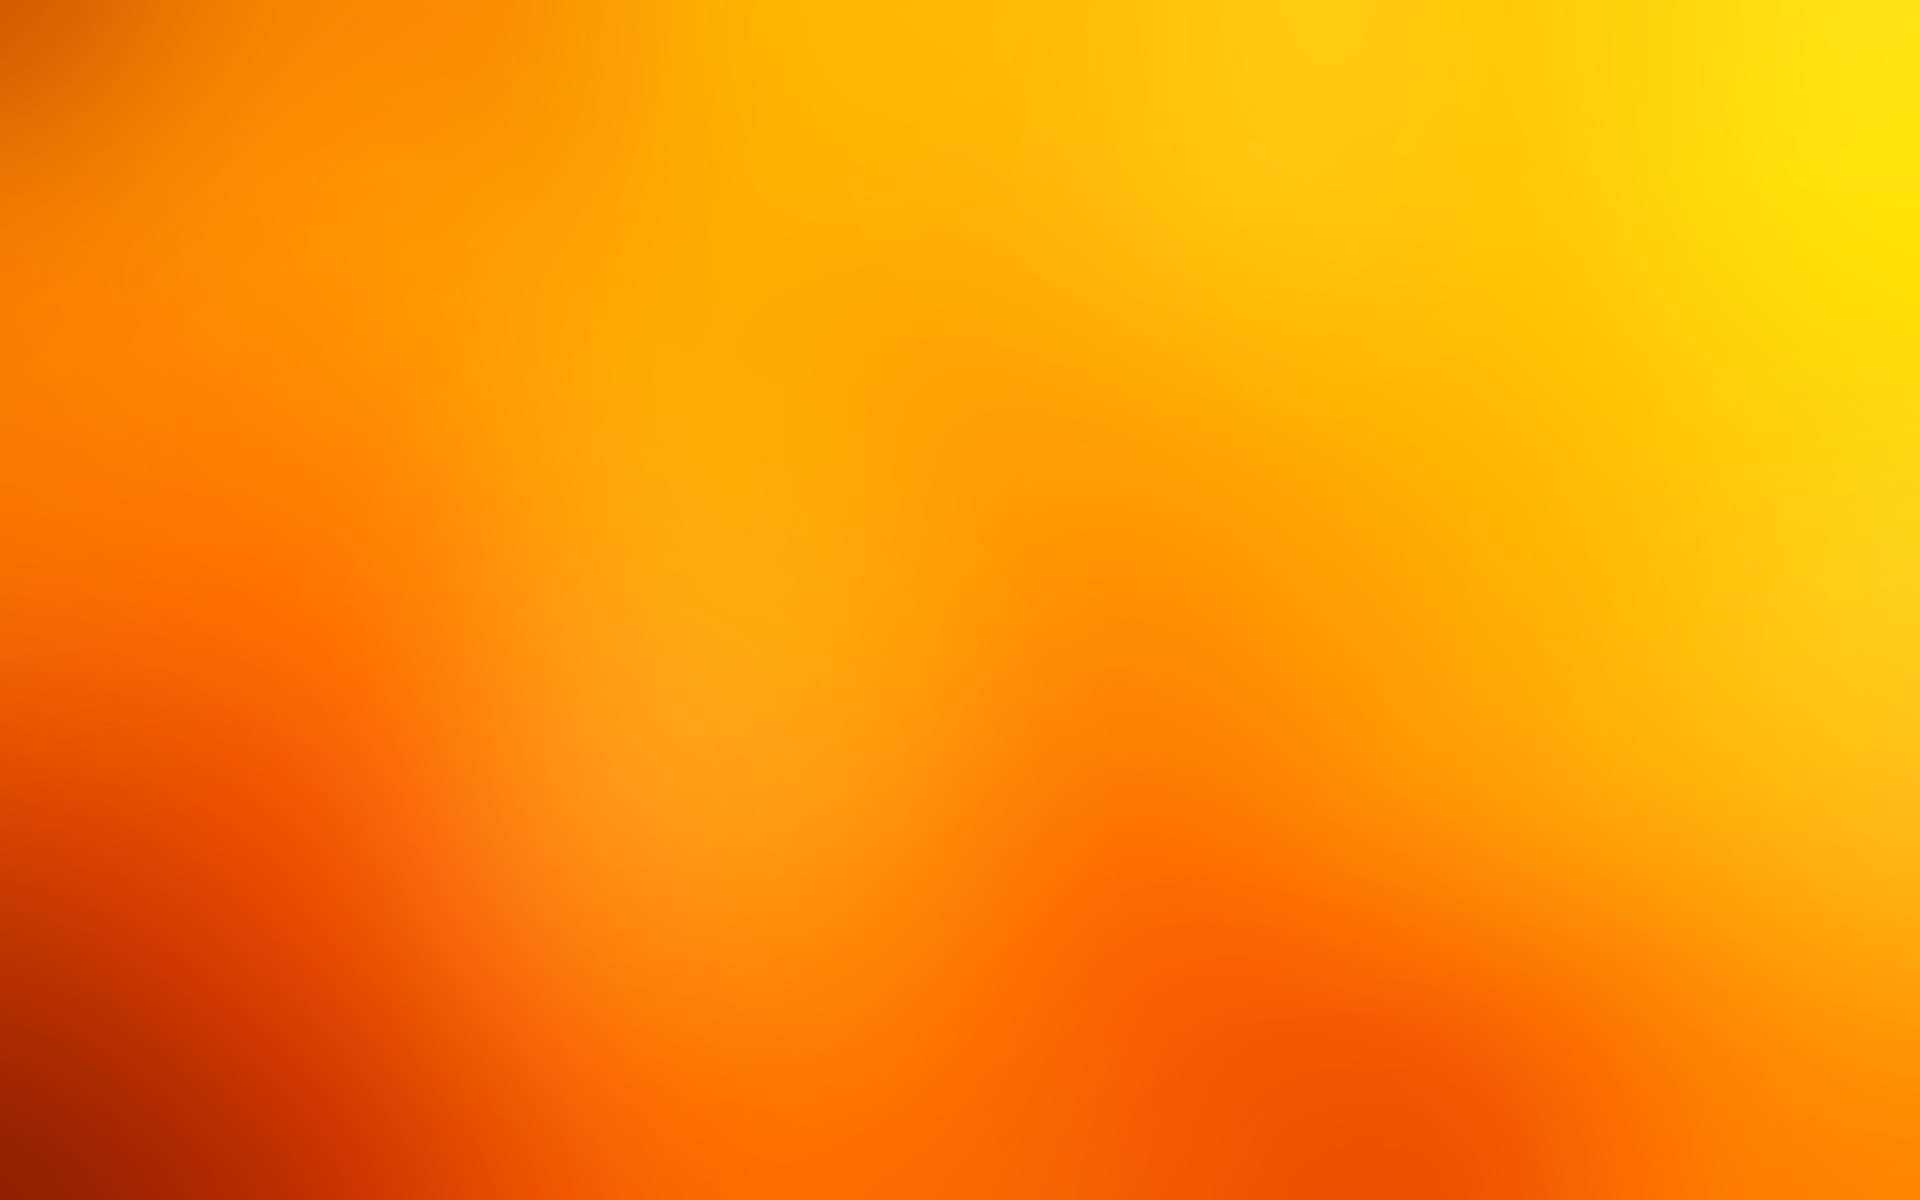 оранжевый цвет, Блюр/размытие - обои на рабочий стол